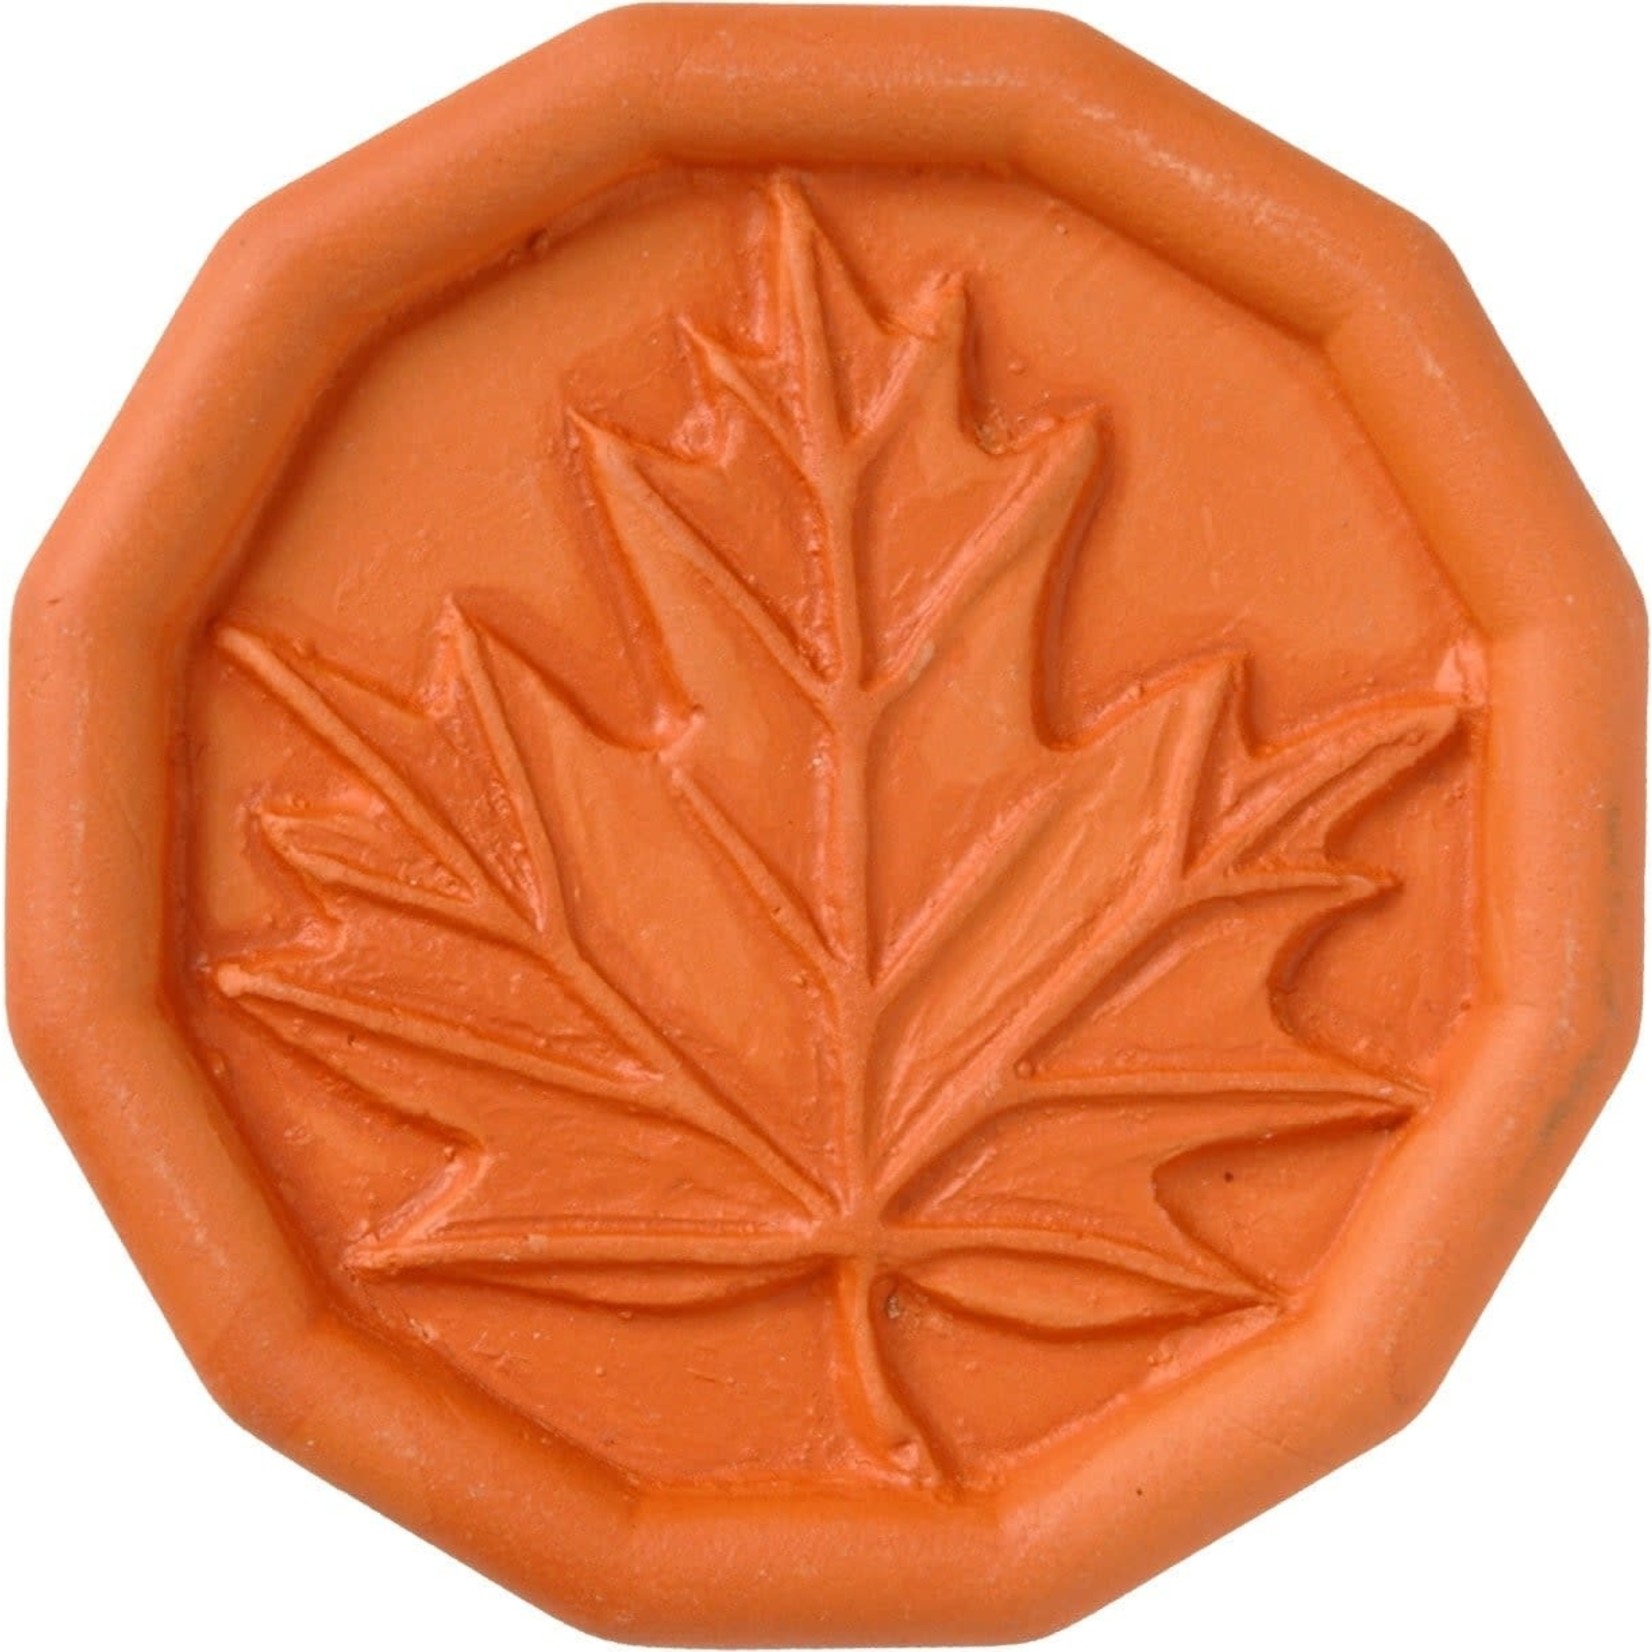 DAVID SHAW Brown Sugar Saver - Maple Leaf